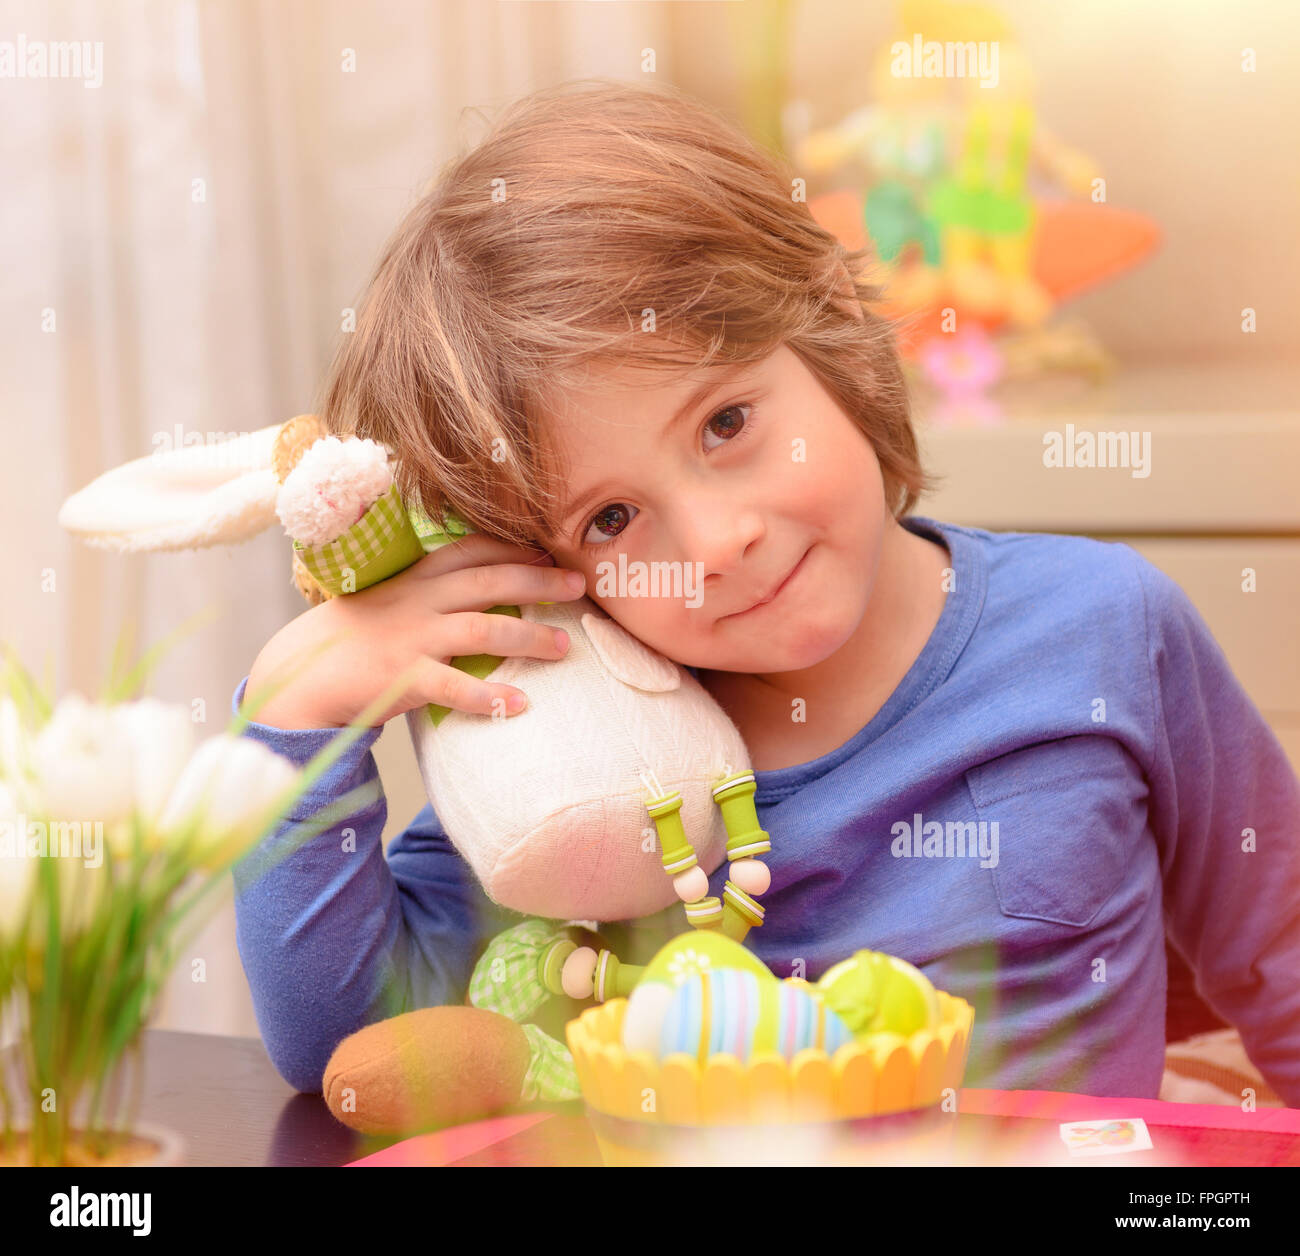 Porträt von niedlichen kleinen Jungen mit Ostern Hase Spielzeug sitzt auf der Küche in der Nähe von bunten Eiern, traditionelle festliche Speisen Stockfoto